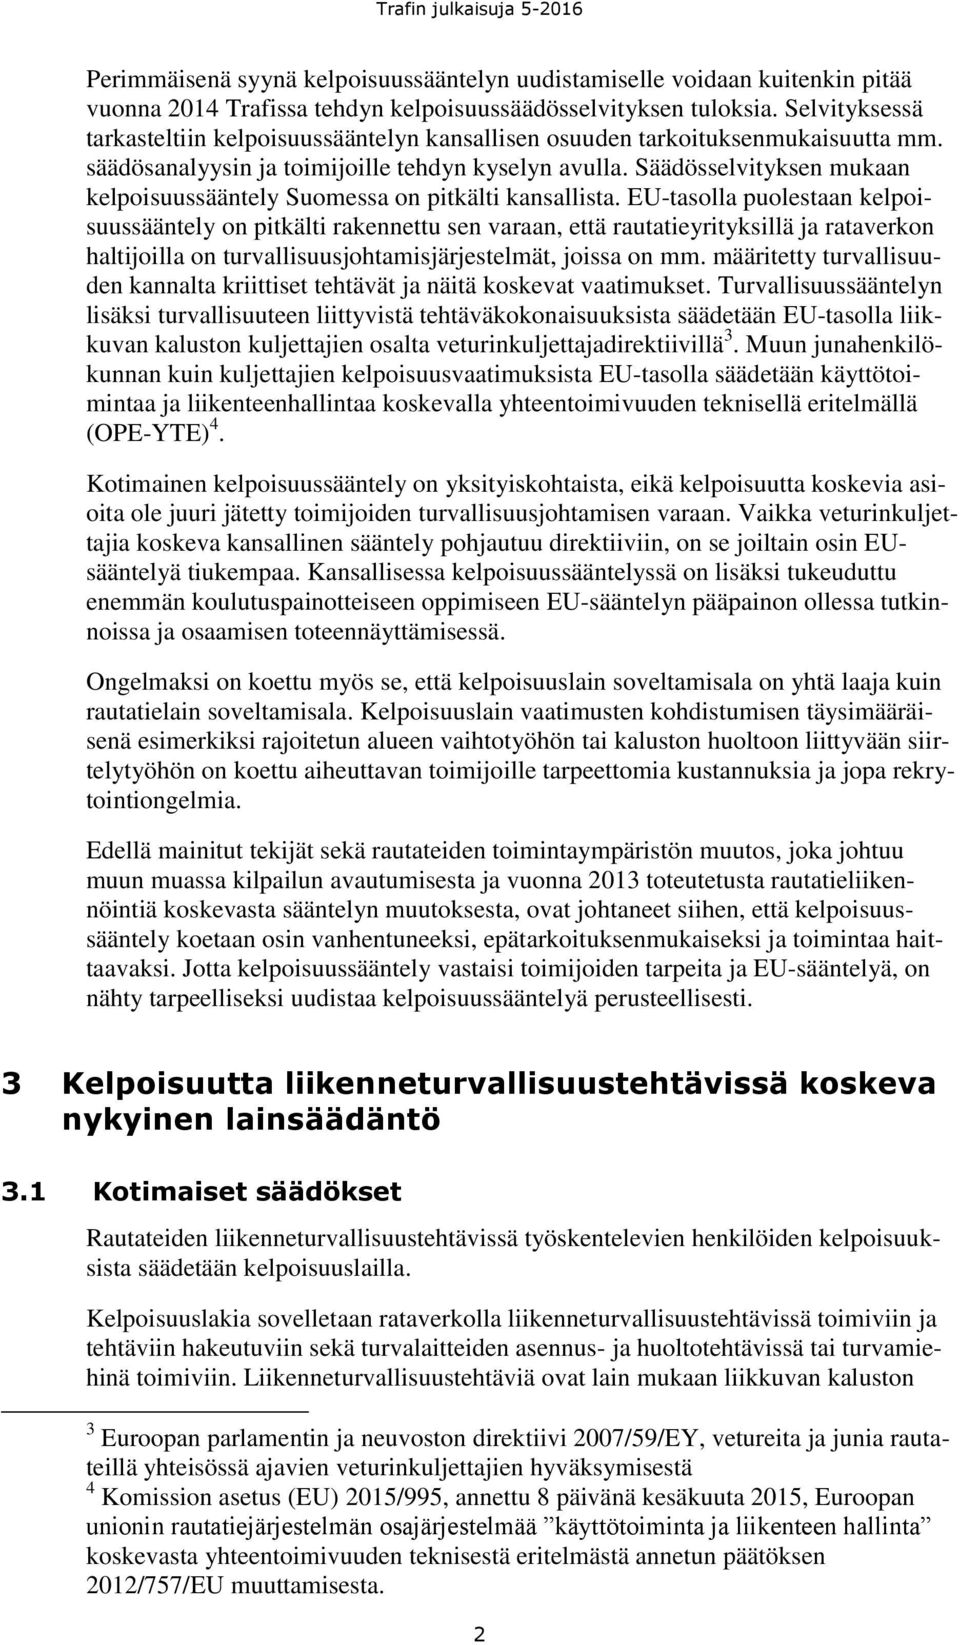 Säädösselvityksen mukaan kelpoisuussääntely Suomessa on pitkälti kansallista.